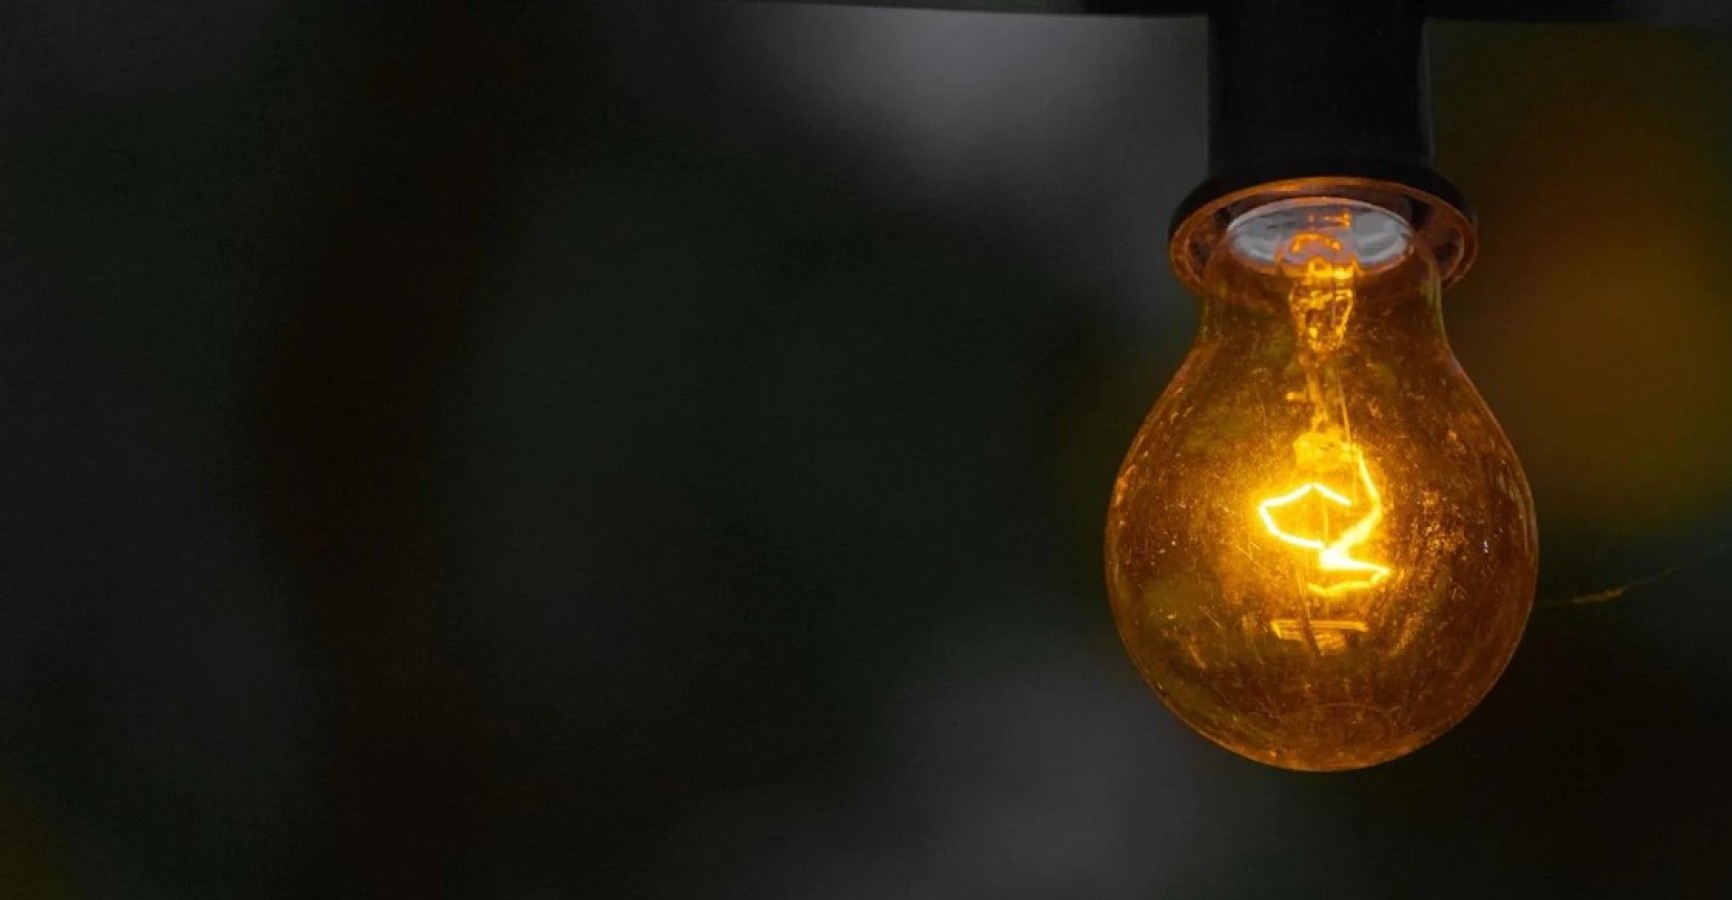 Urfa'da elektrik kesintisi bezdirdi: Bir şey olursa sorumlusu DEDAŞ!;